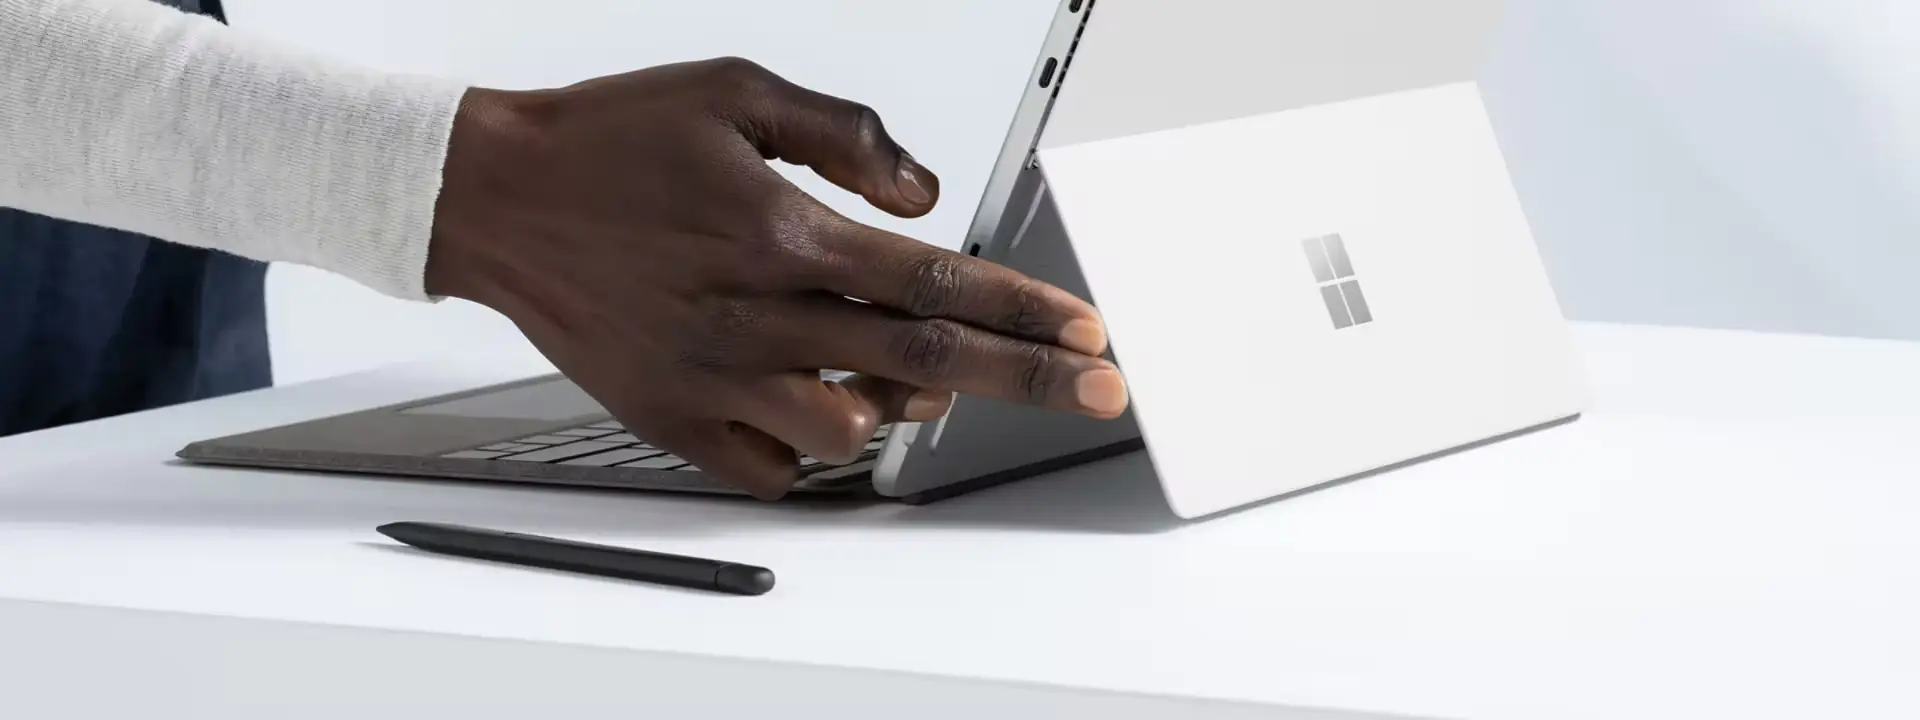 Планшет Surface Pro против ноутбука Surface: какой из них подходит именно вам?